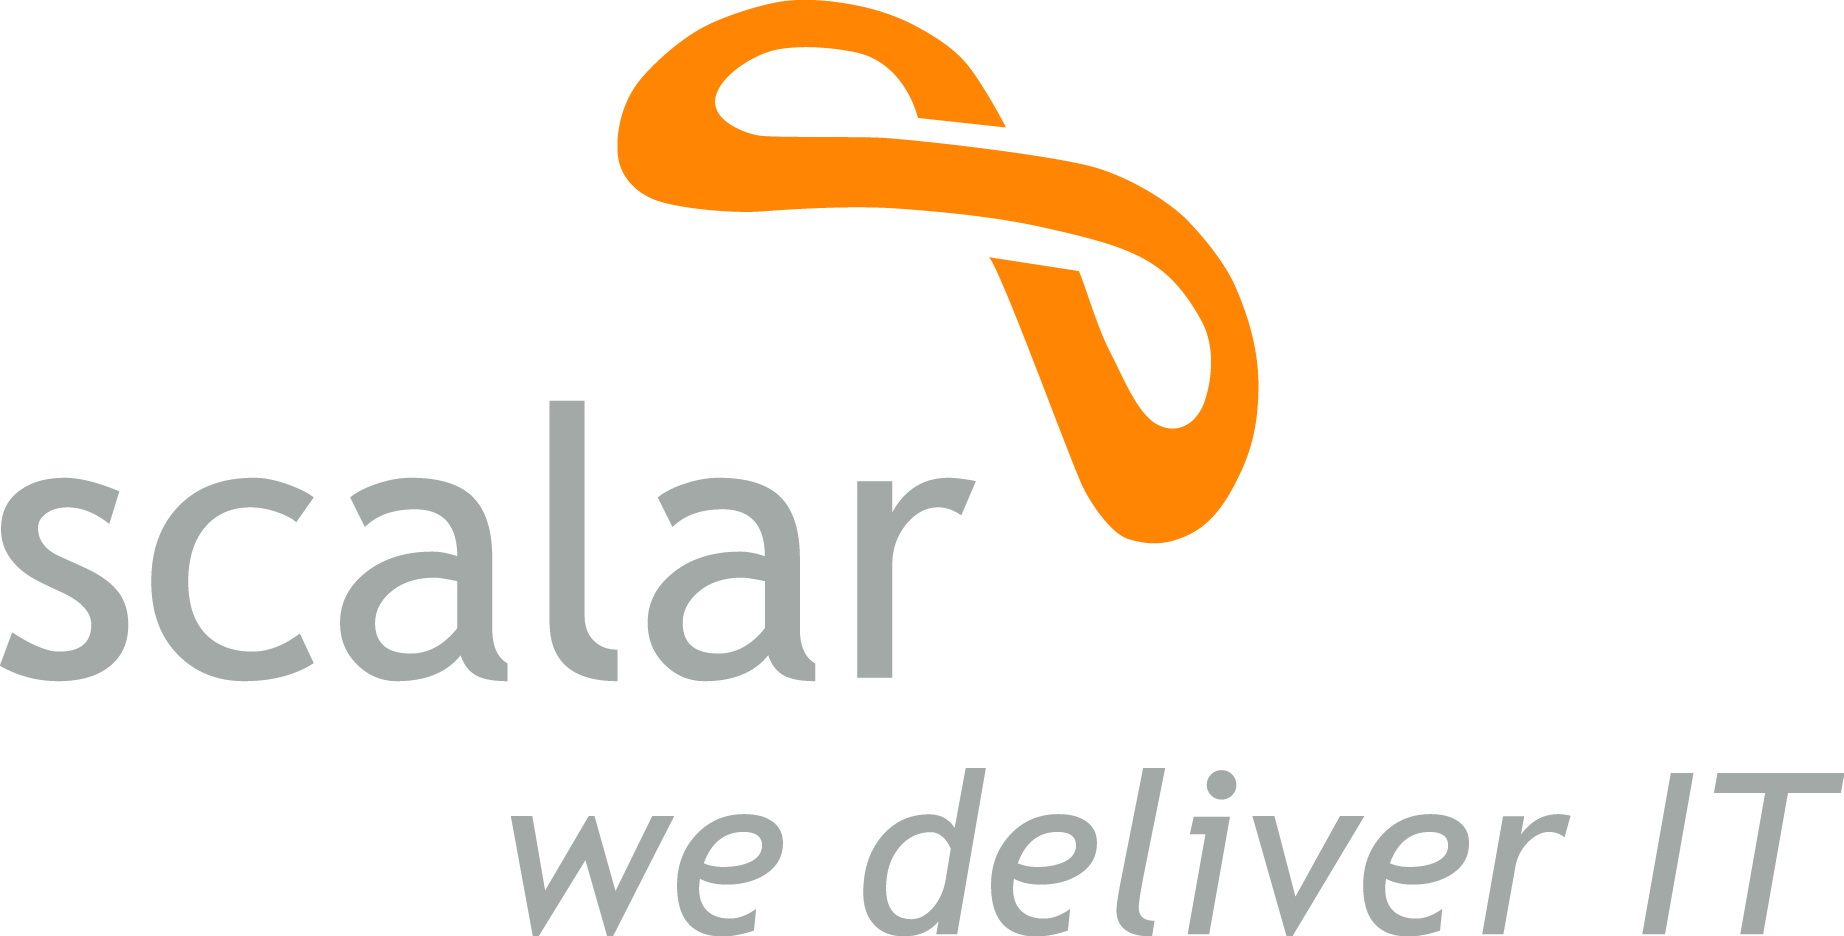 Scalar | We deliver IT